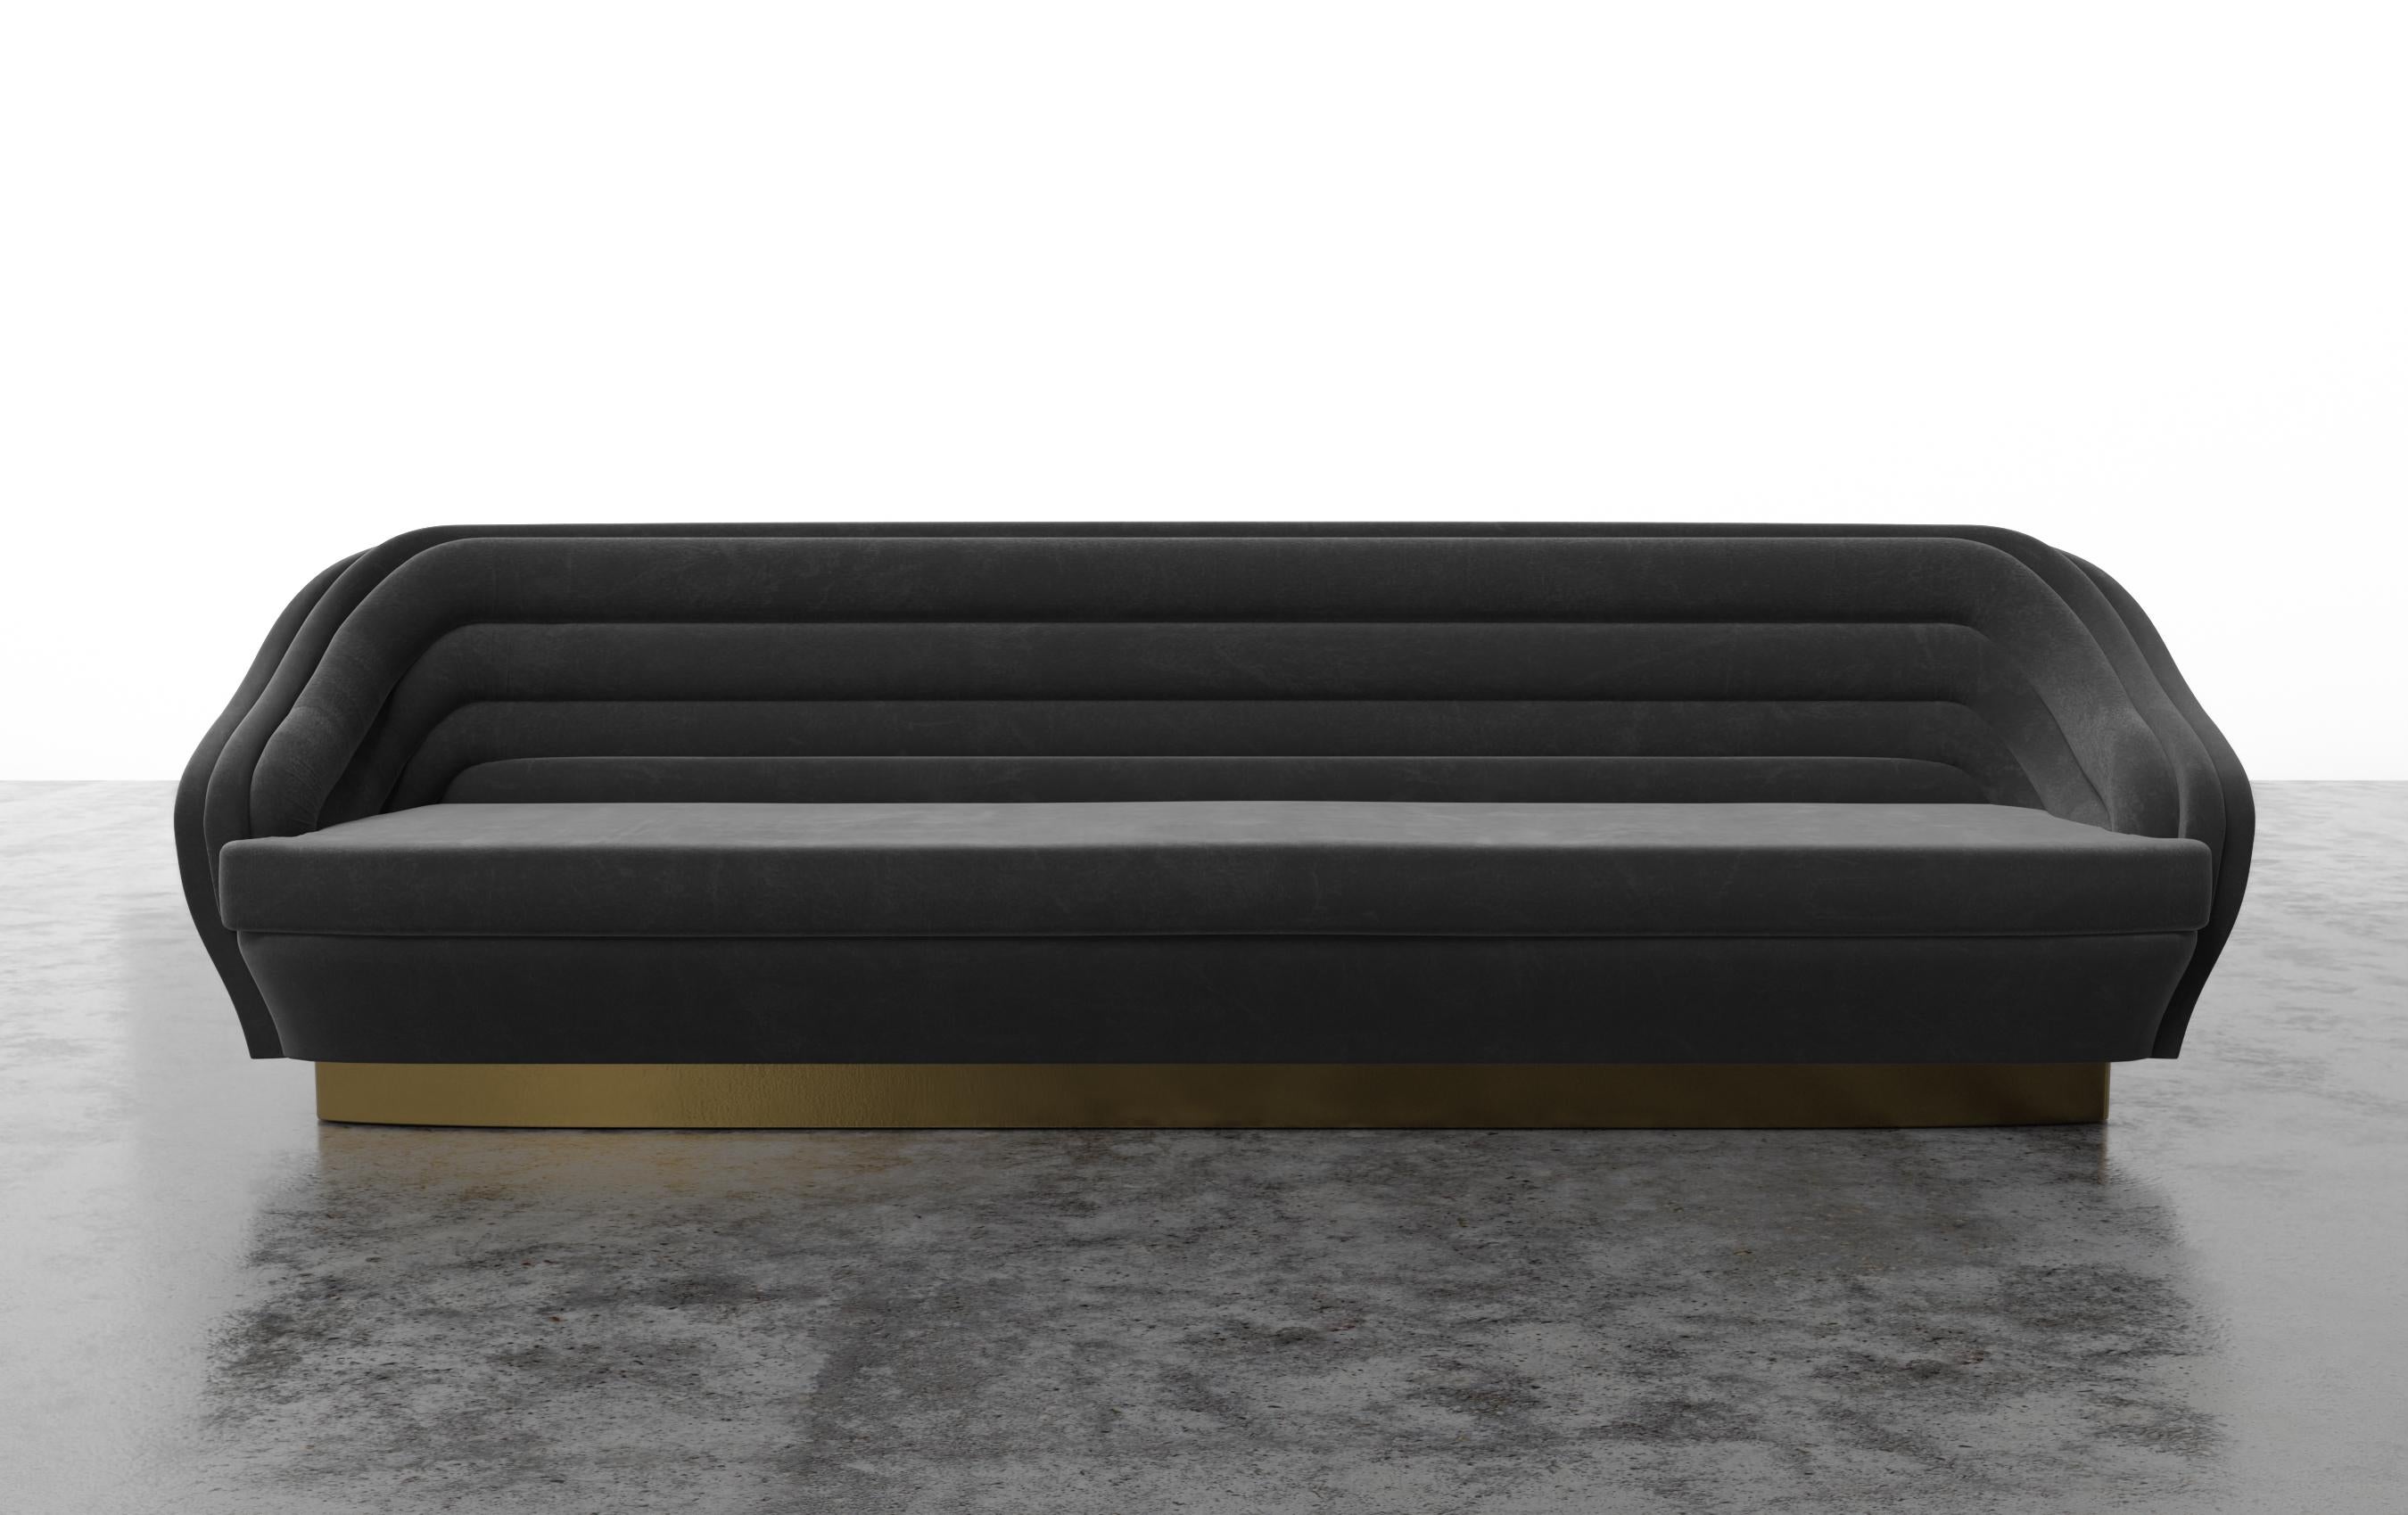 RAOUL SOFA - Modernes Rinnensofa auf Messing-Sockel in COM

Das Sofa Raoul klingt wie ein luxuriöses und stilvolles Möbelstück, das von der Haute Couture von Jean Paul Gaultier inspiriert wurde. Die horizontalen Samtkanäle und der drehbare Sockel